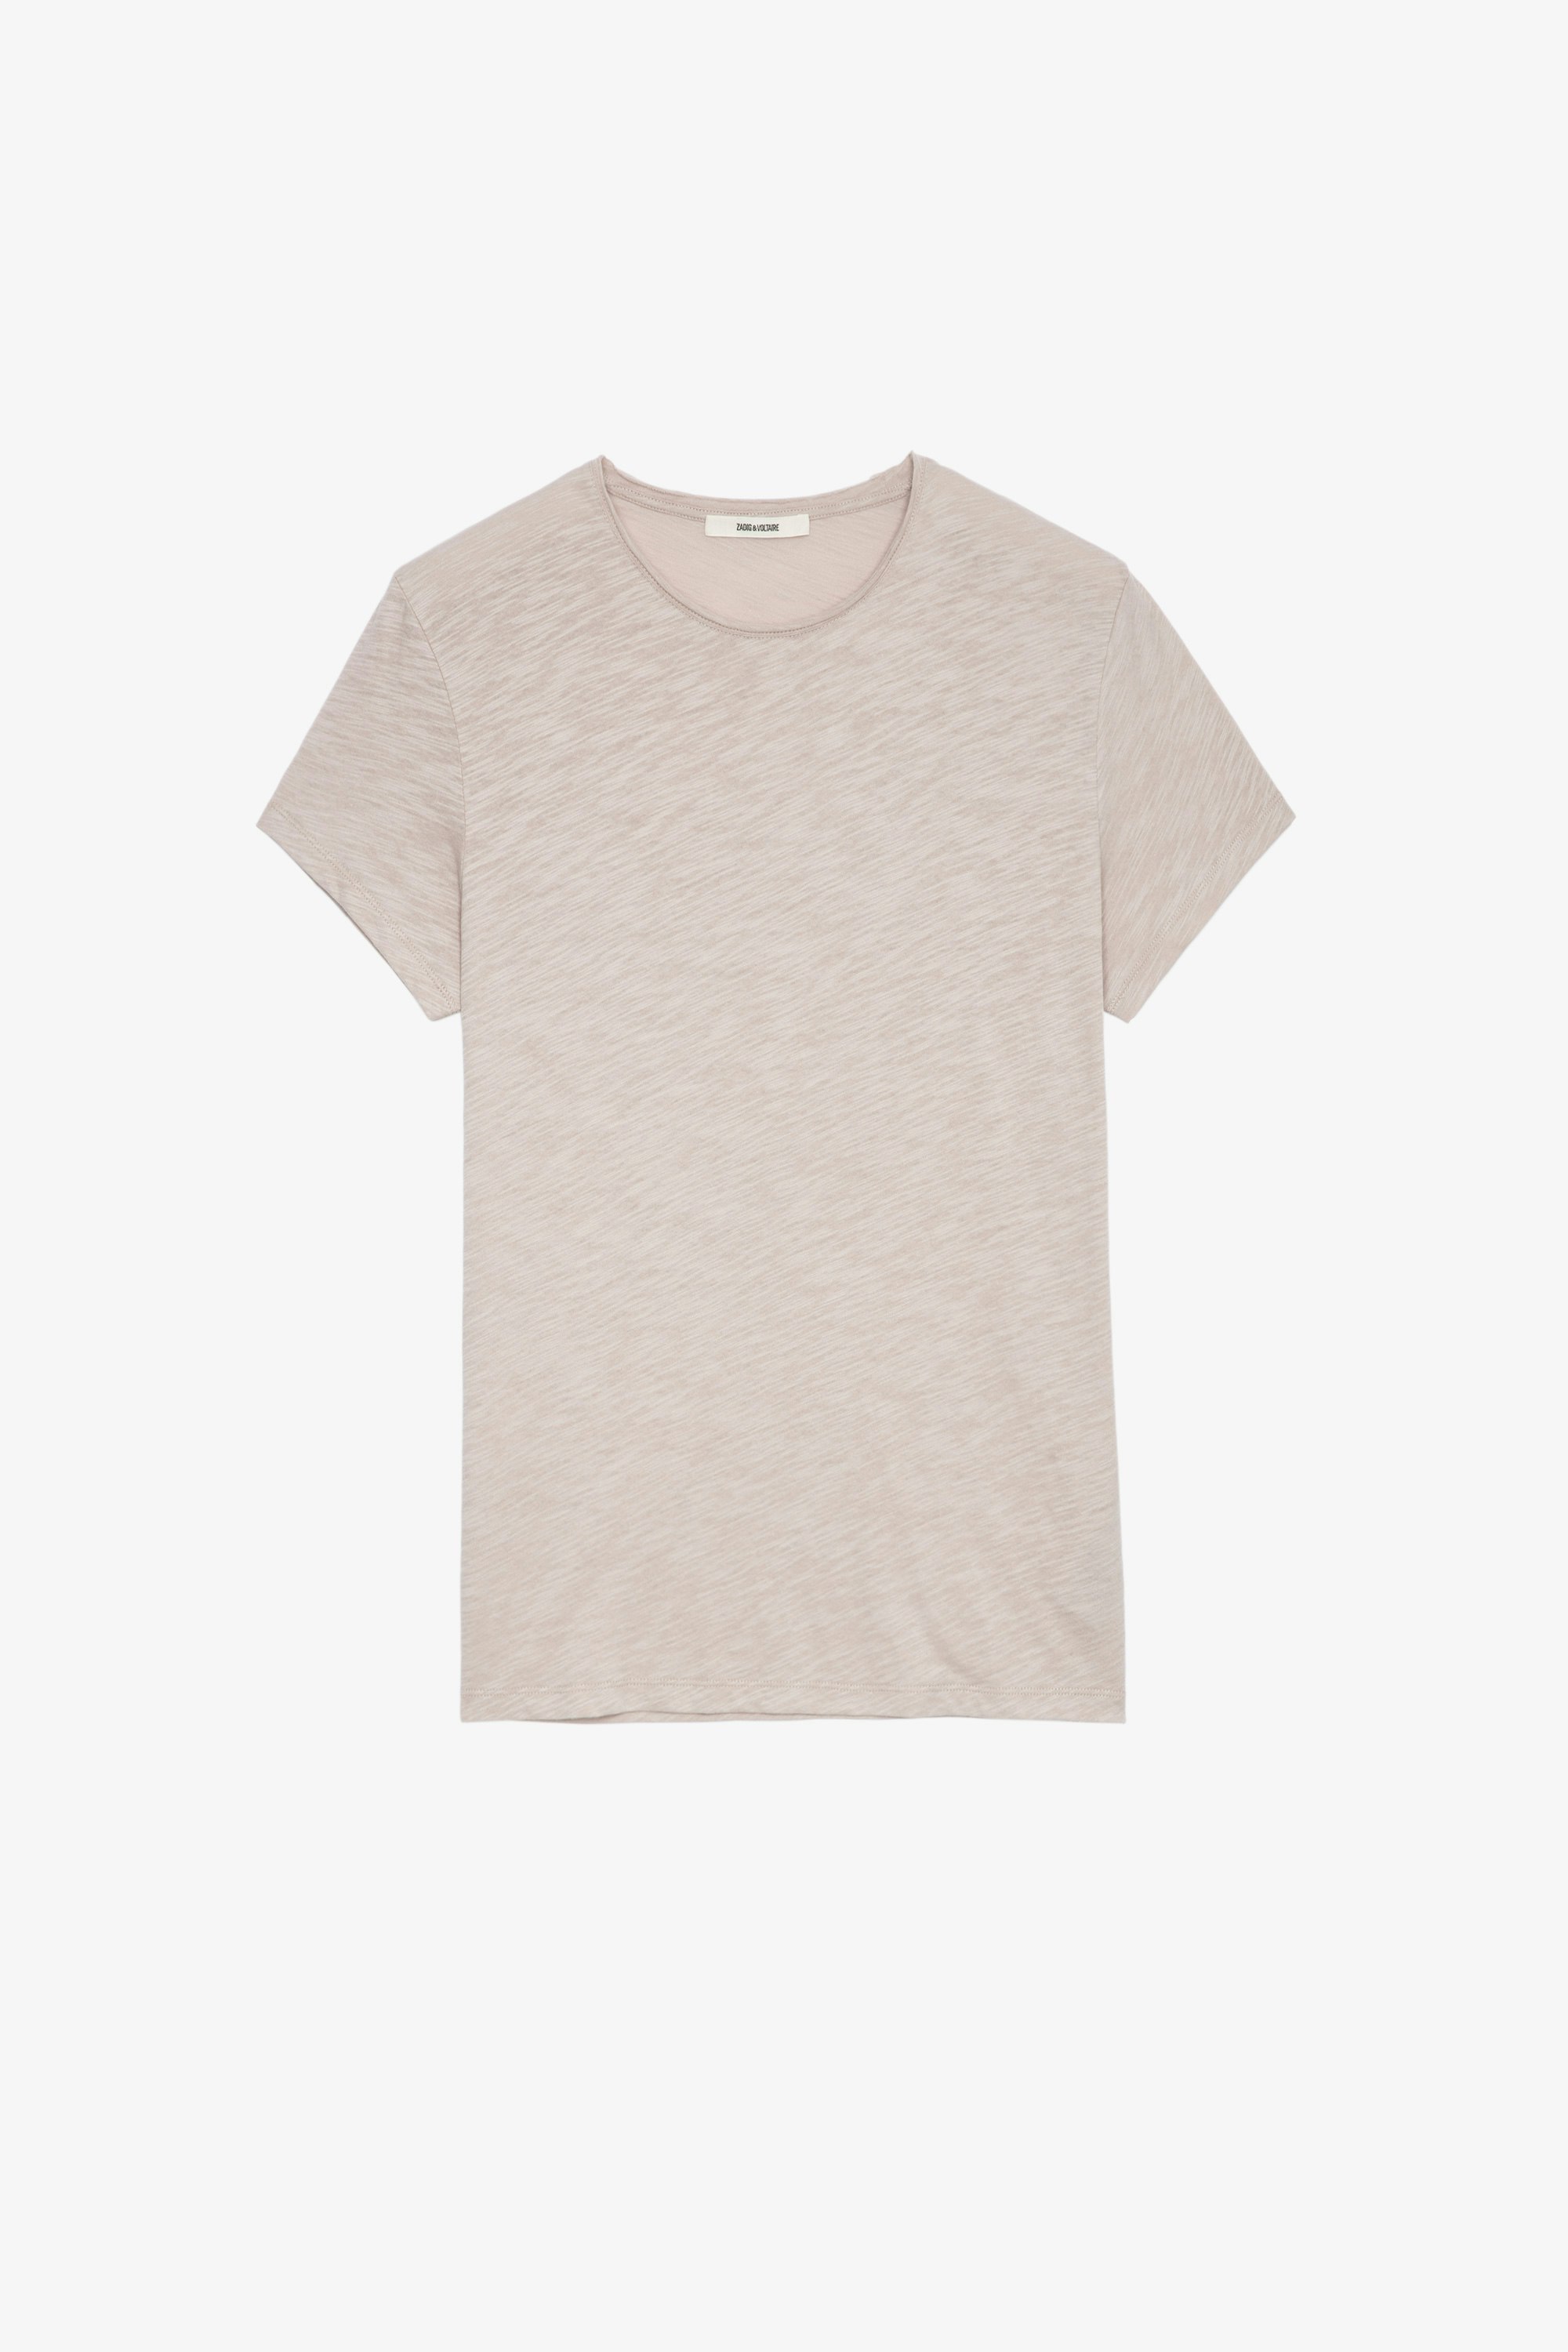 T-Shirt Toby Geflammt Beigefarbenes Herren-T-Shirt aus geflammter Baumwolle